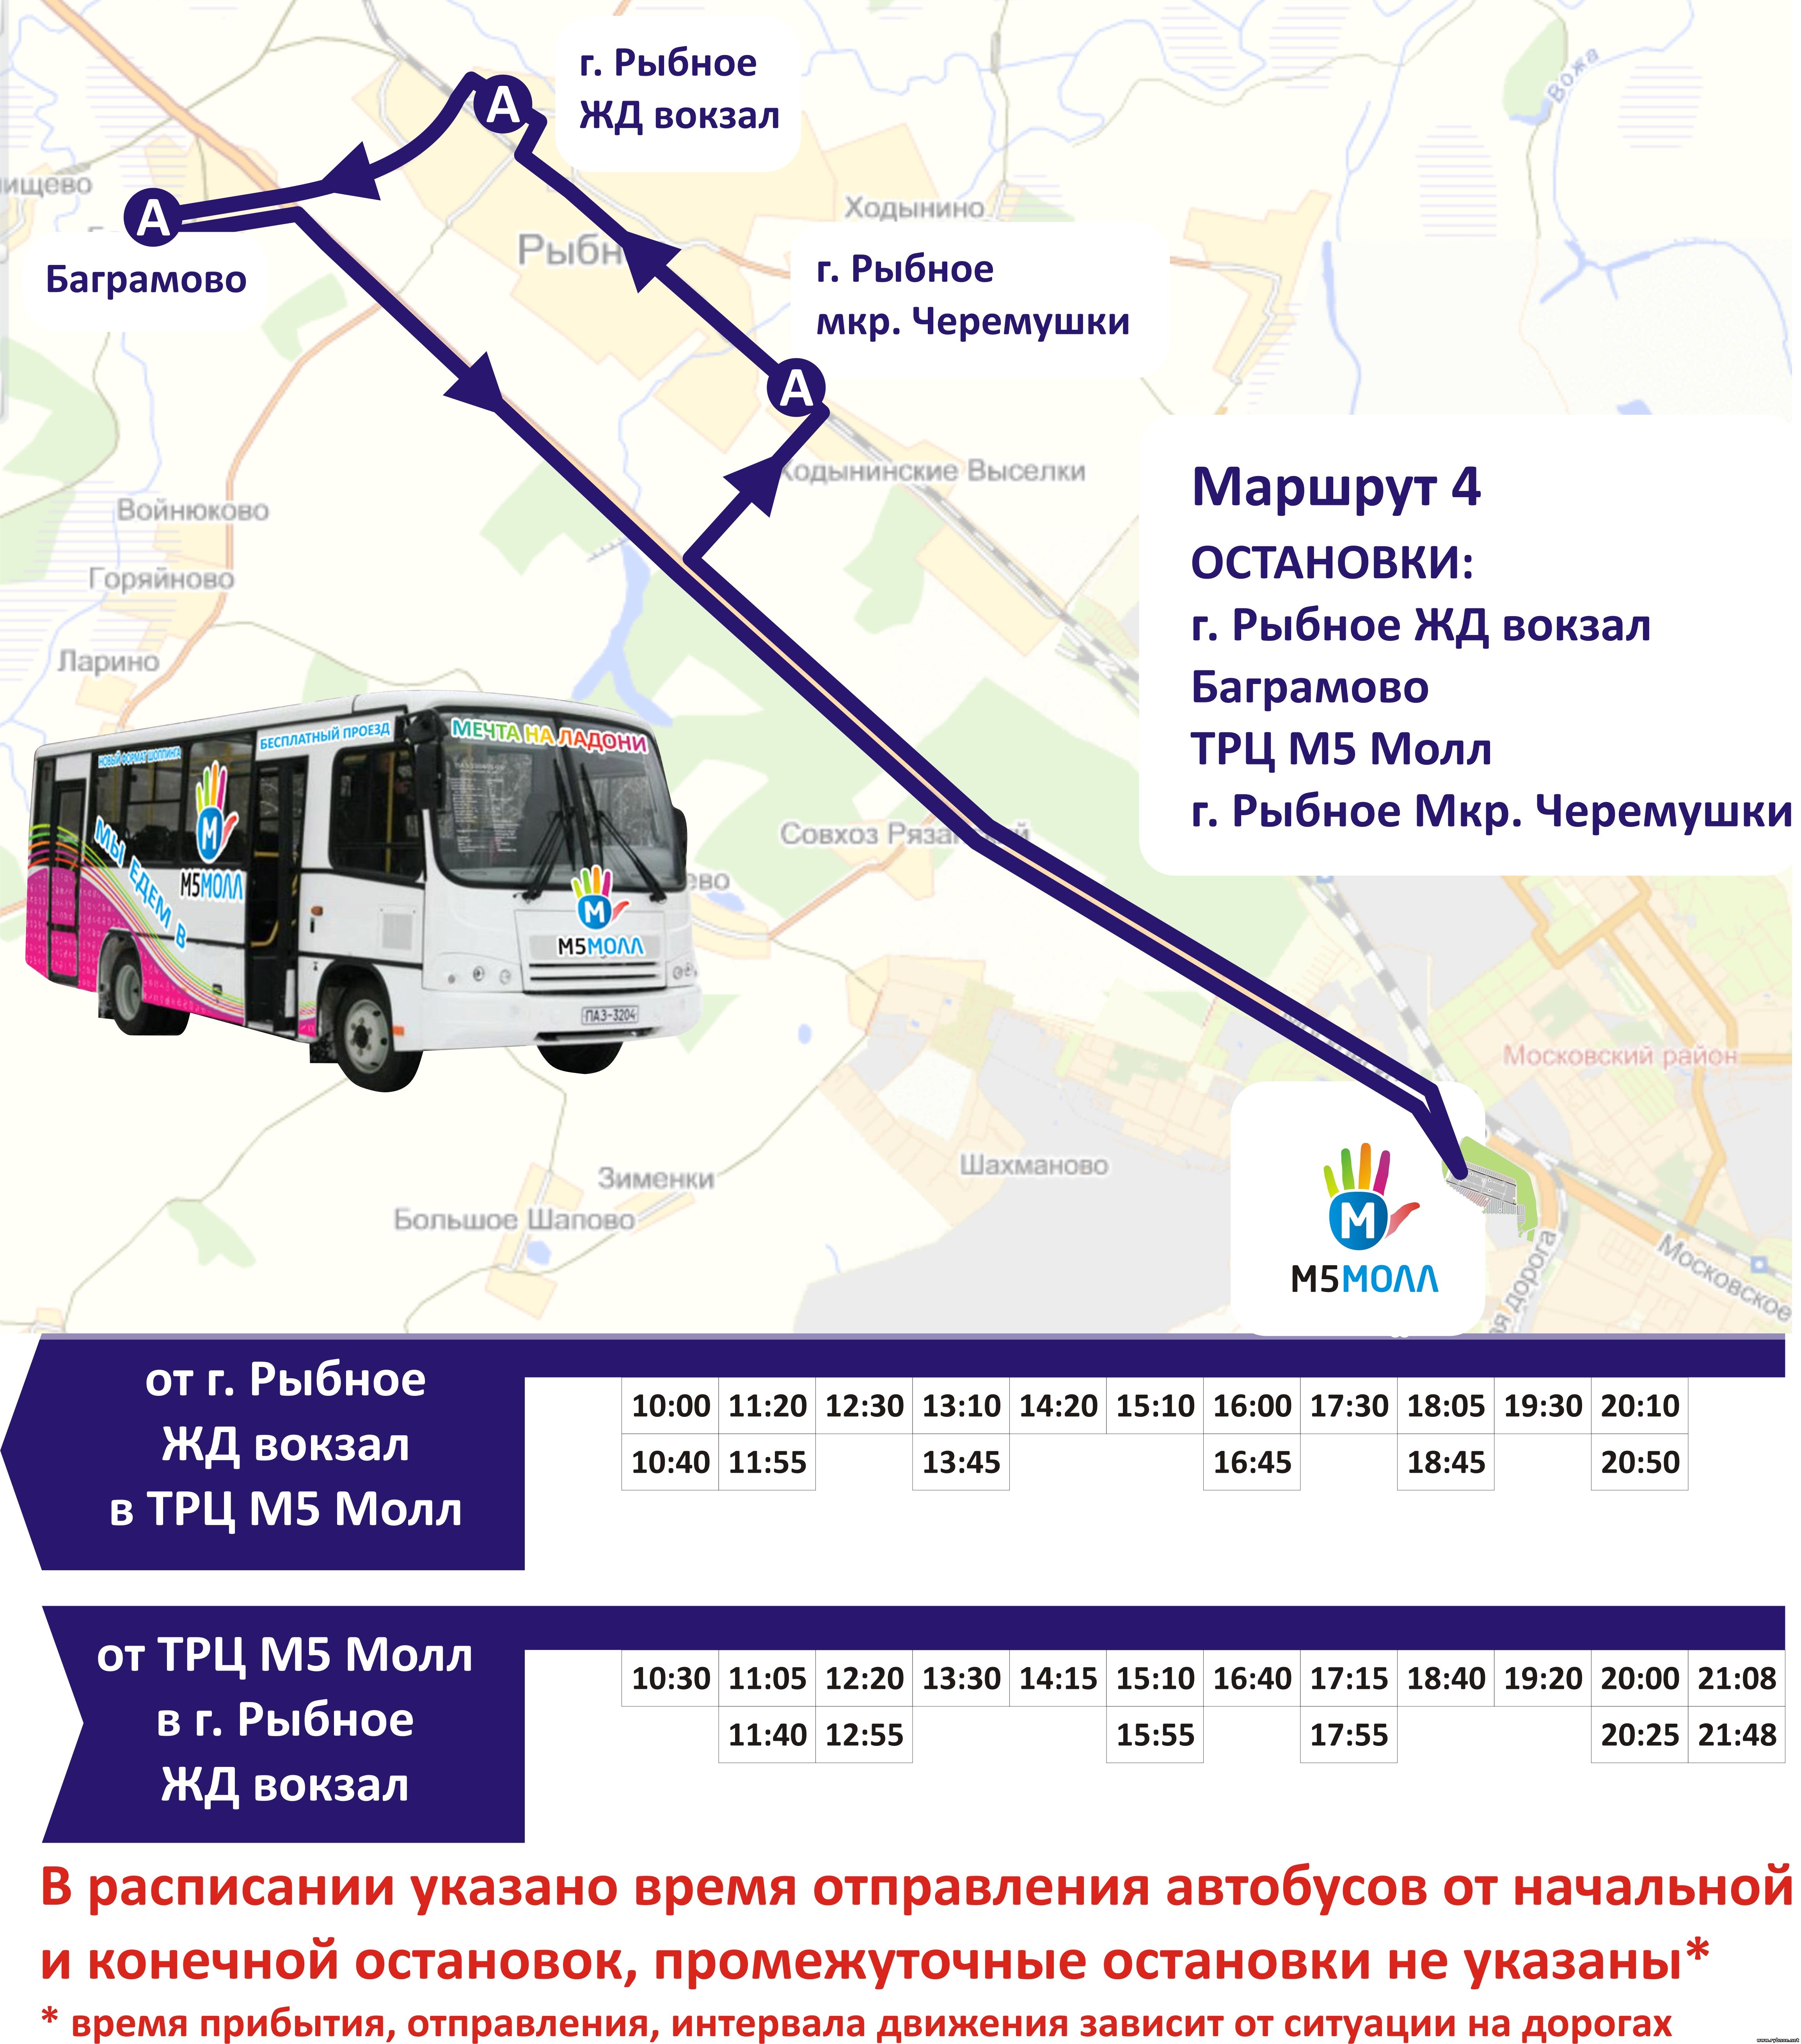 М5 молл бесплатный автобус